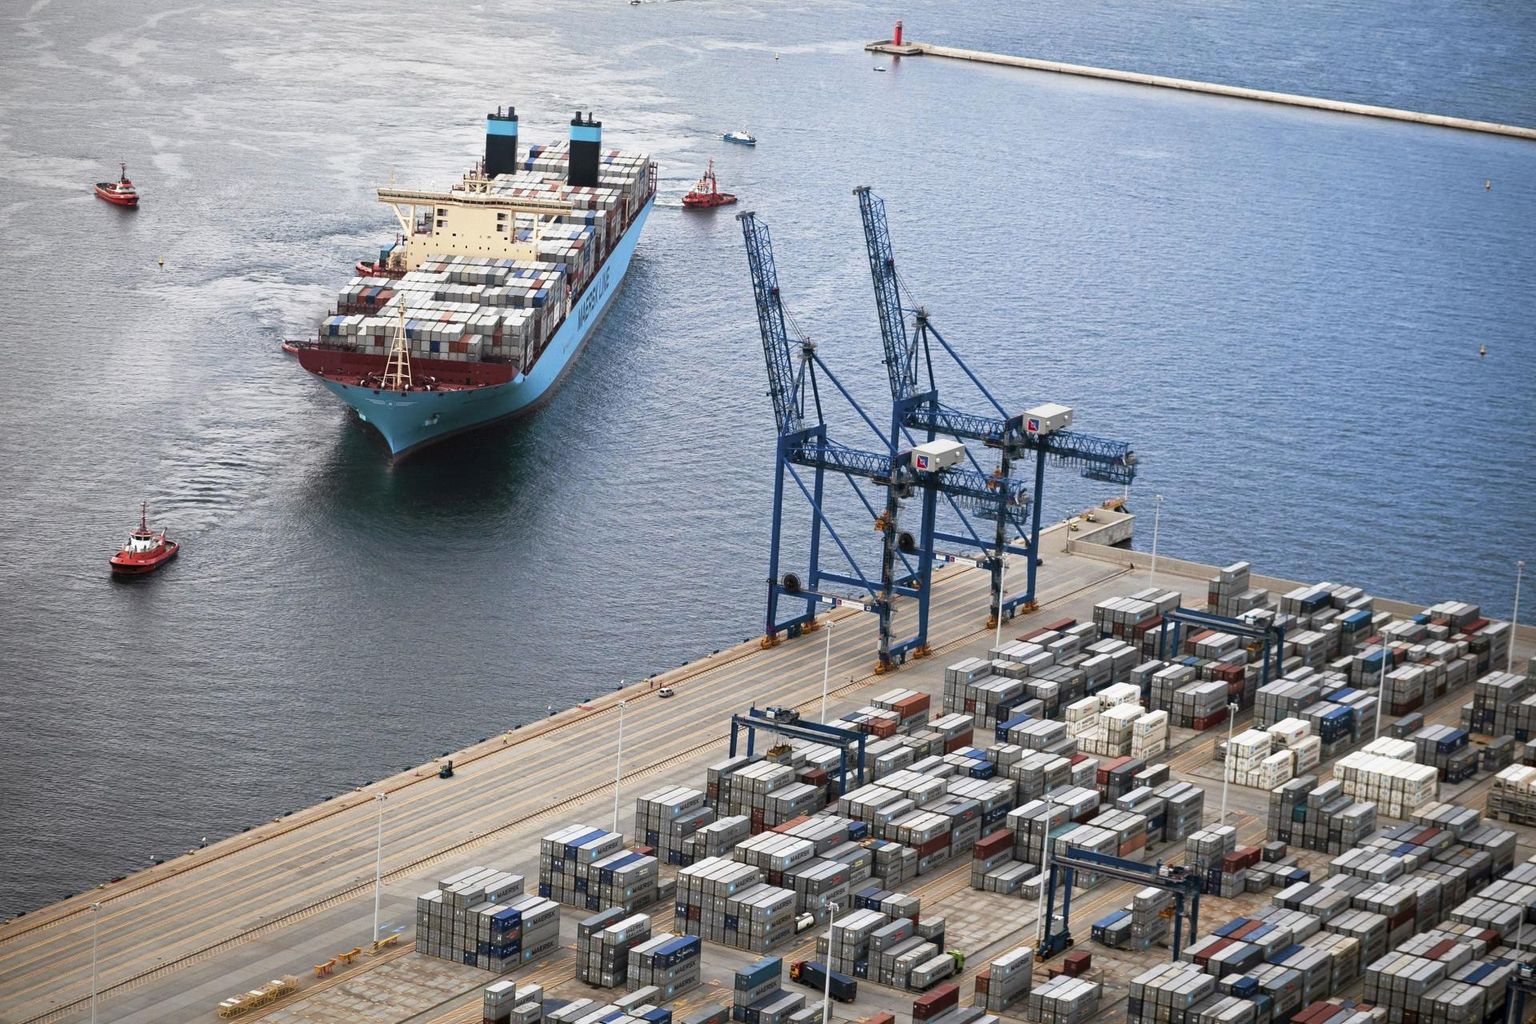 Maailma suurim konteinerlaev MV Maersk Mc-Kinney Møller saabub Gdanski sadamasse. Maerski kasum kerkis mullu seitsmekordseks.